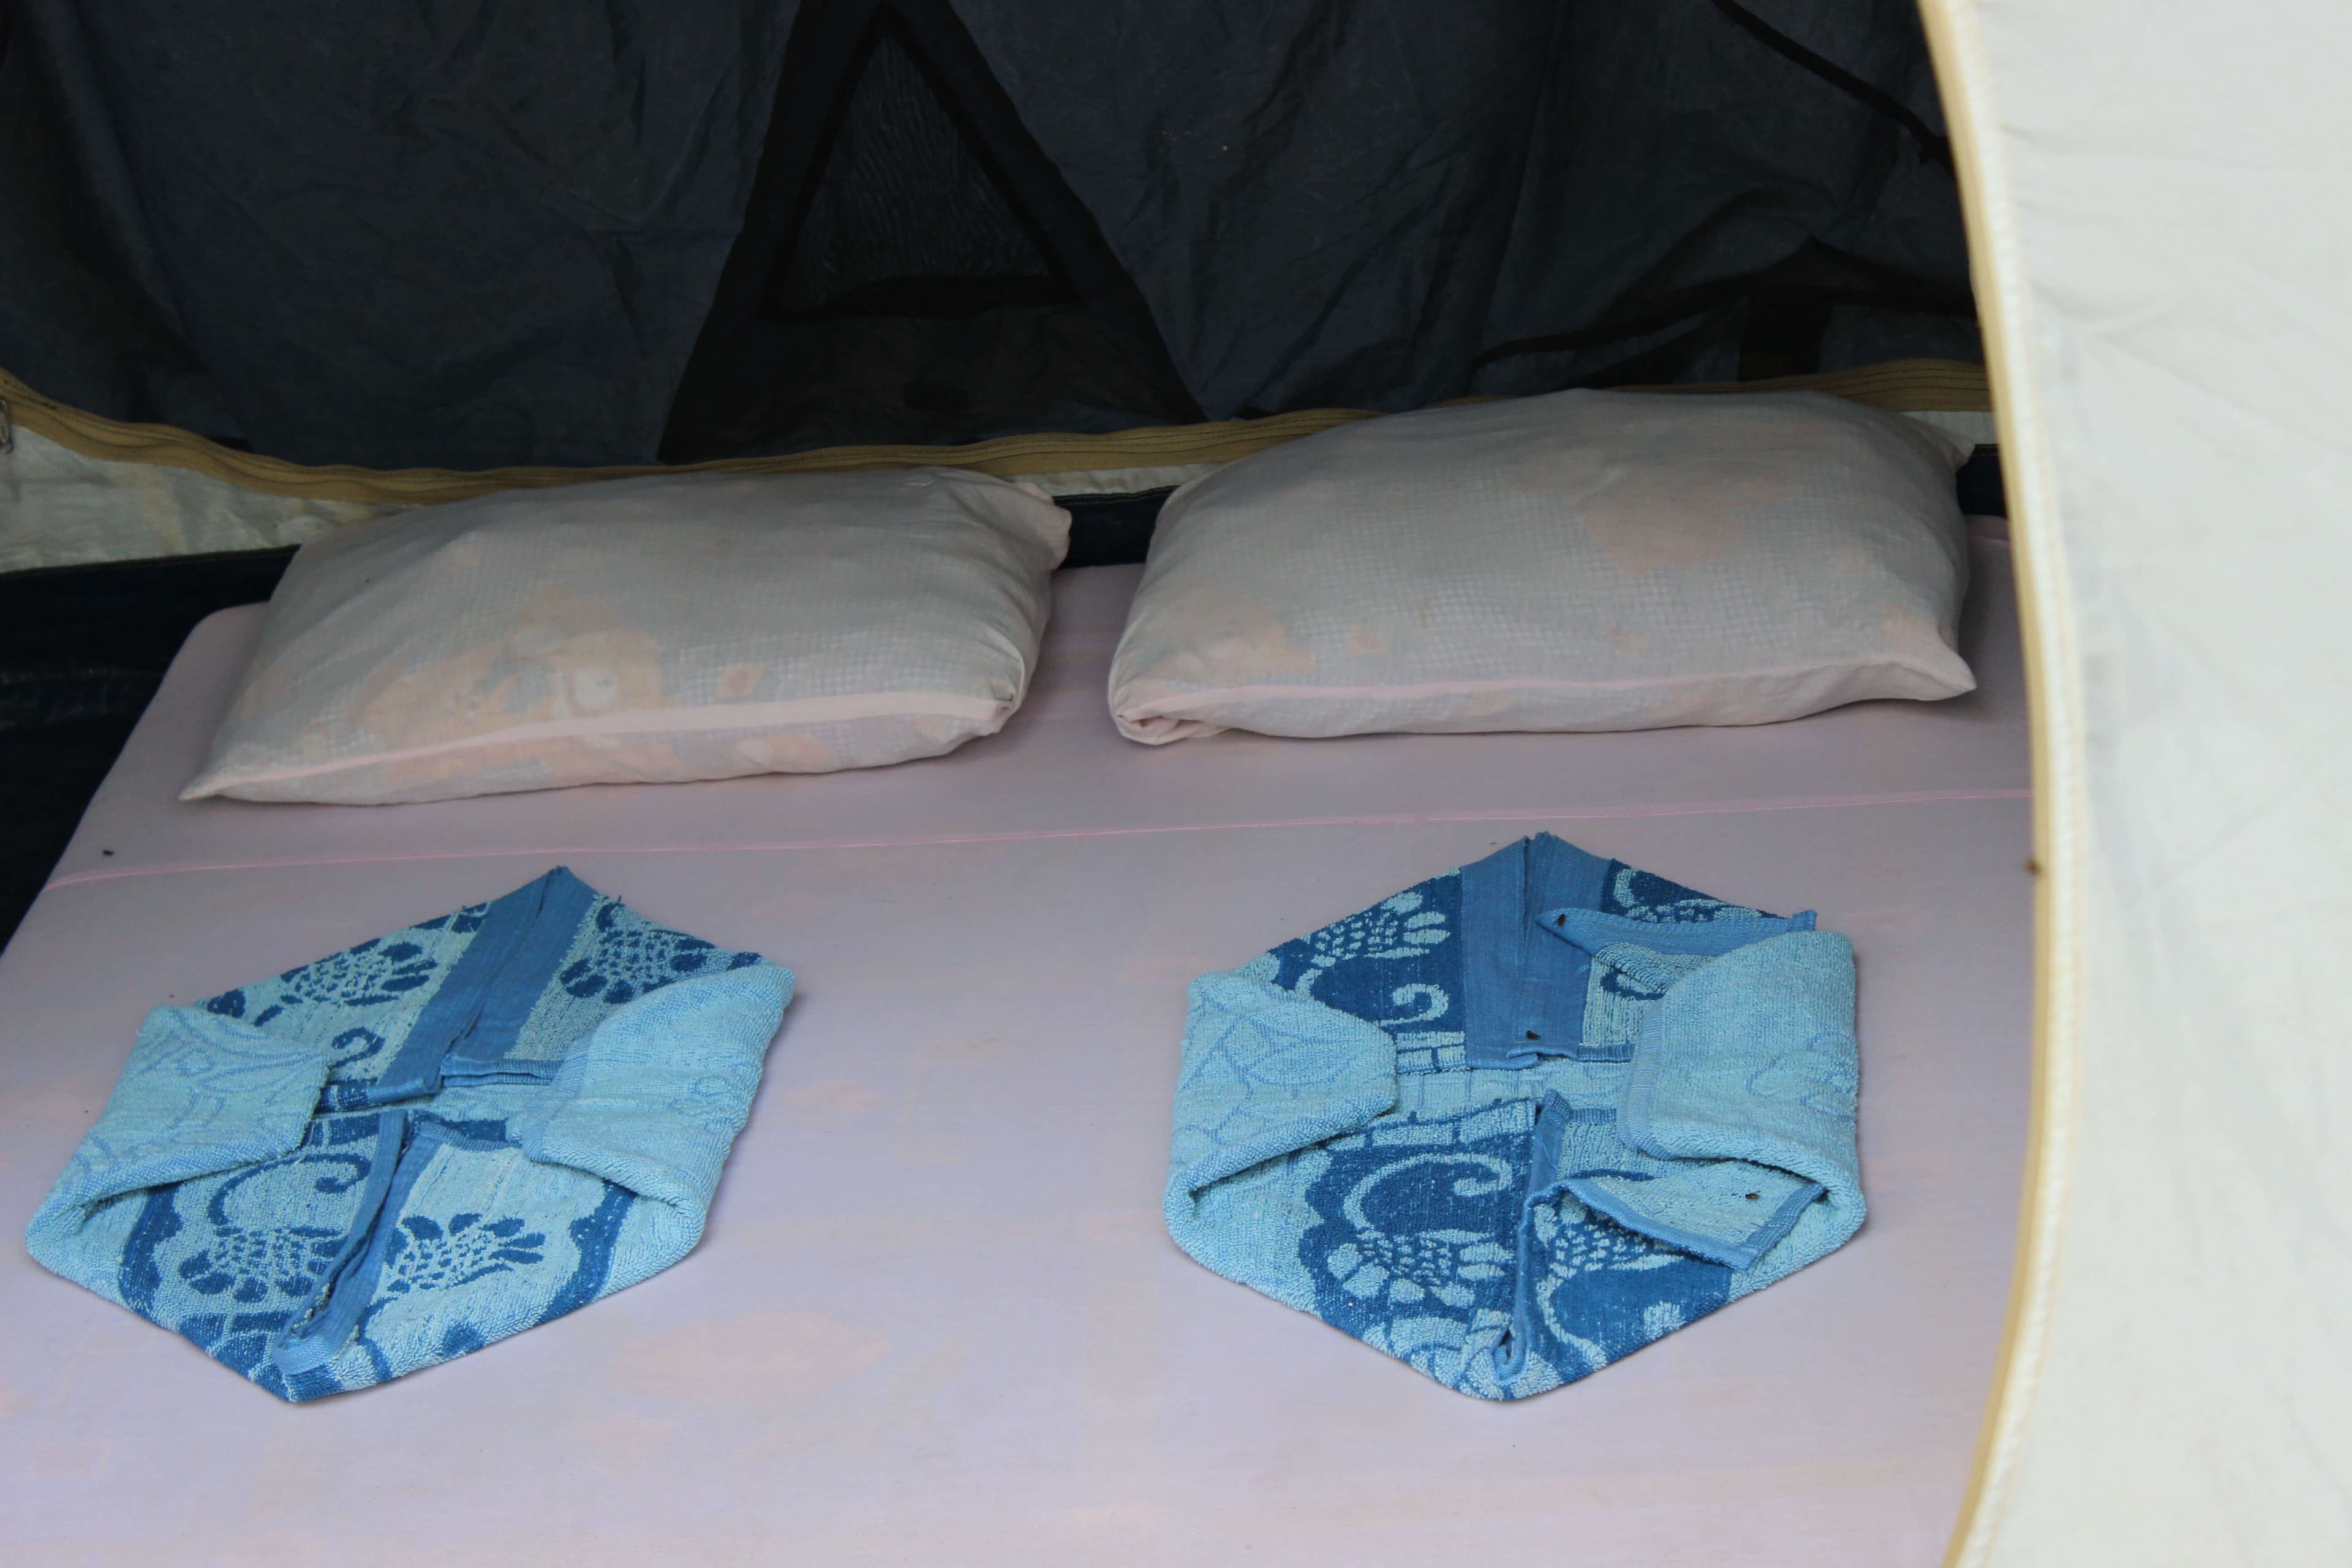 هذه الصورة موجودة داخل الخيمة في أرض التخييم في ميمور